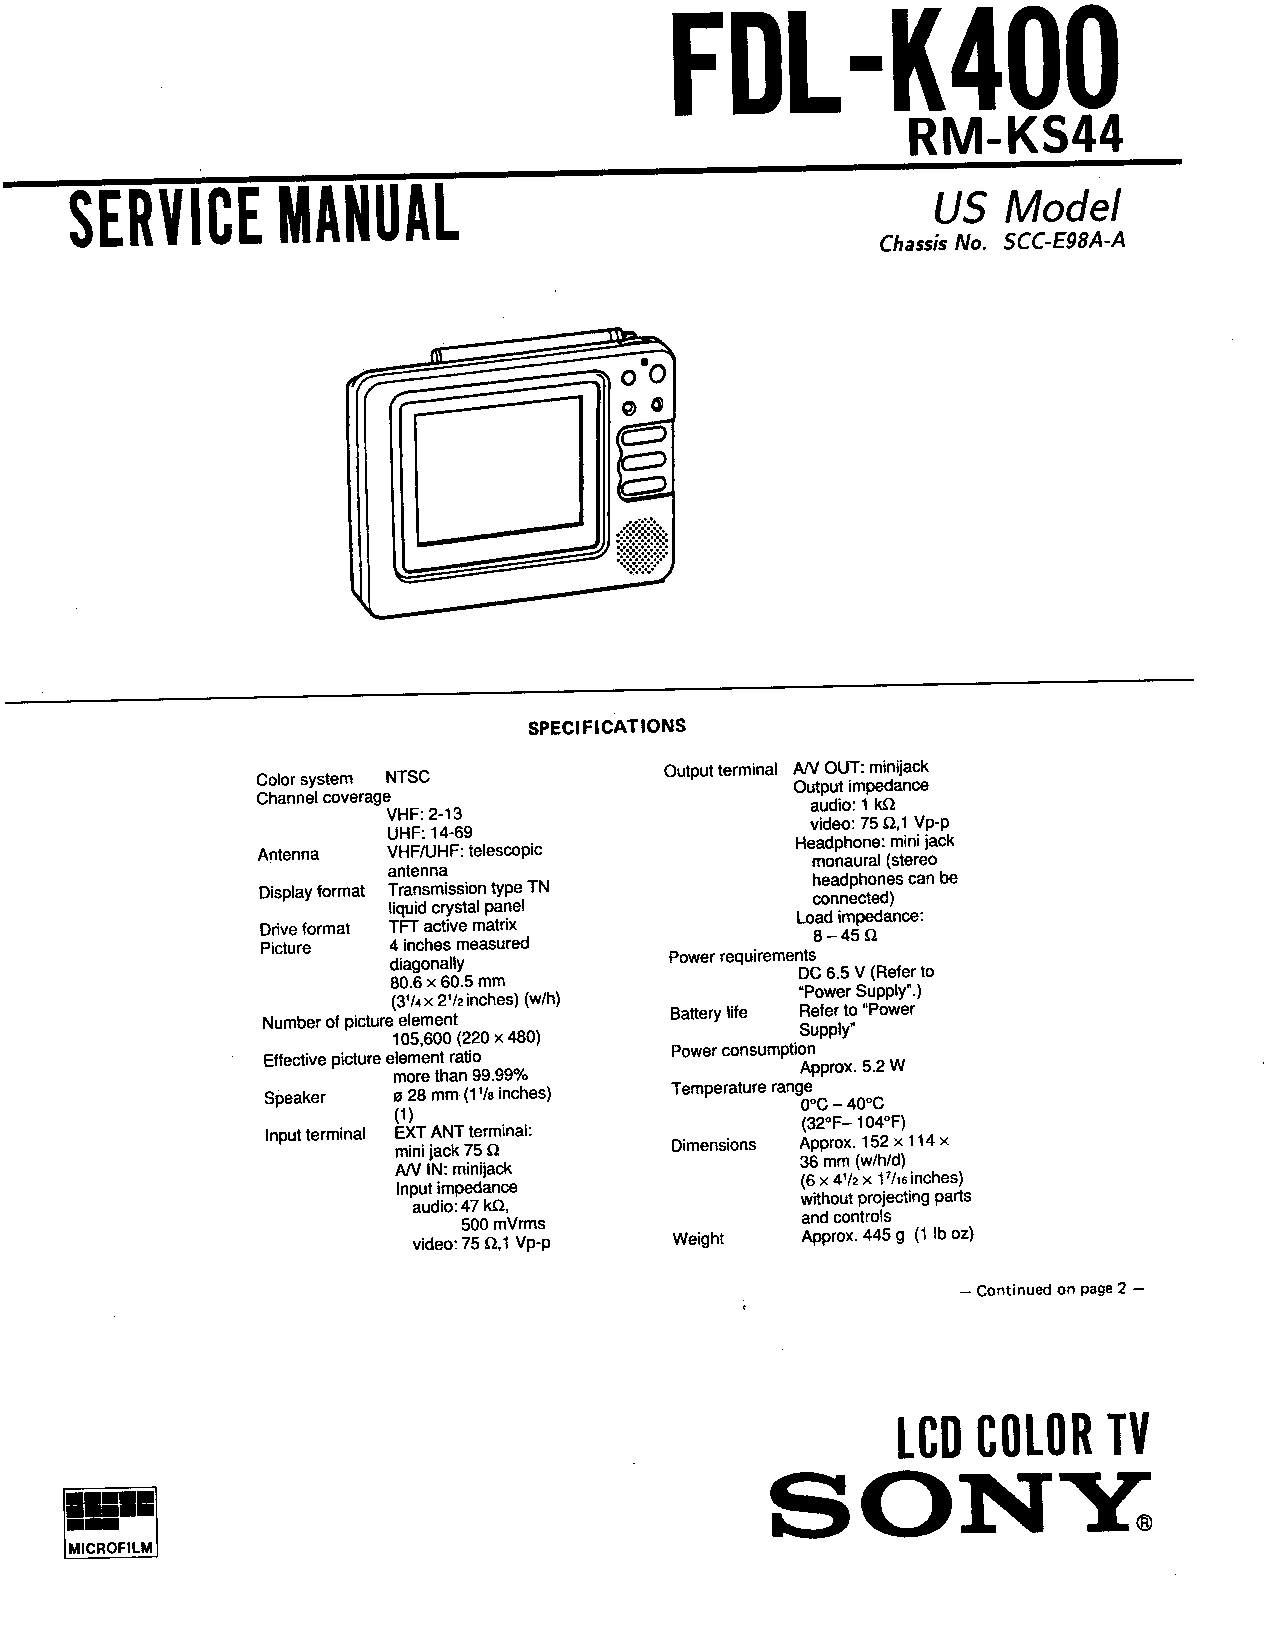 Sony FDL-K400 Service Manual